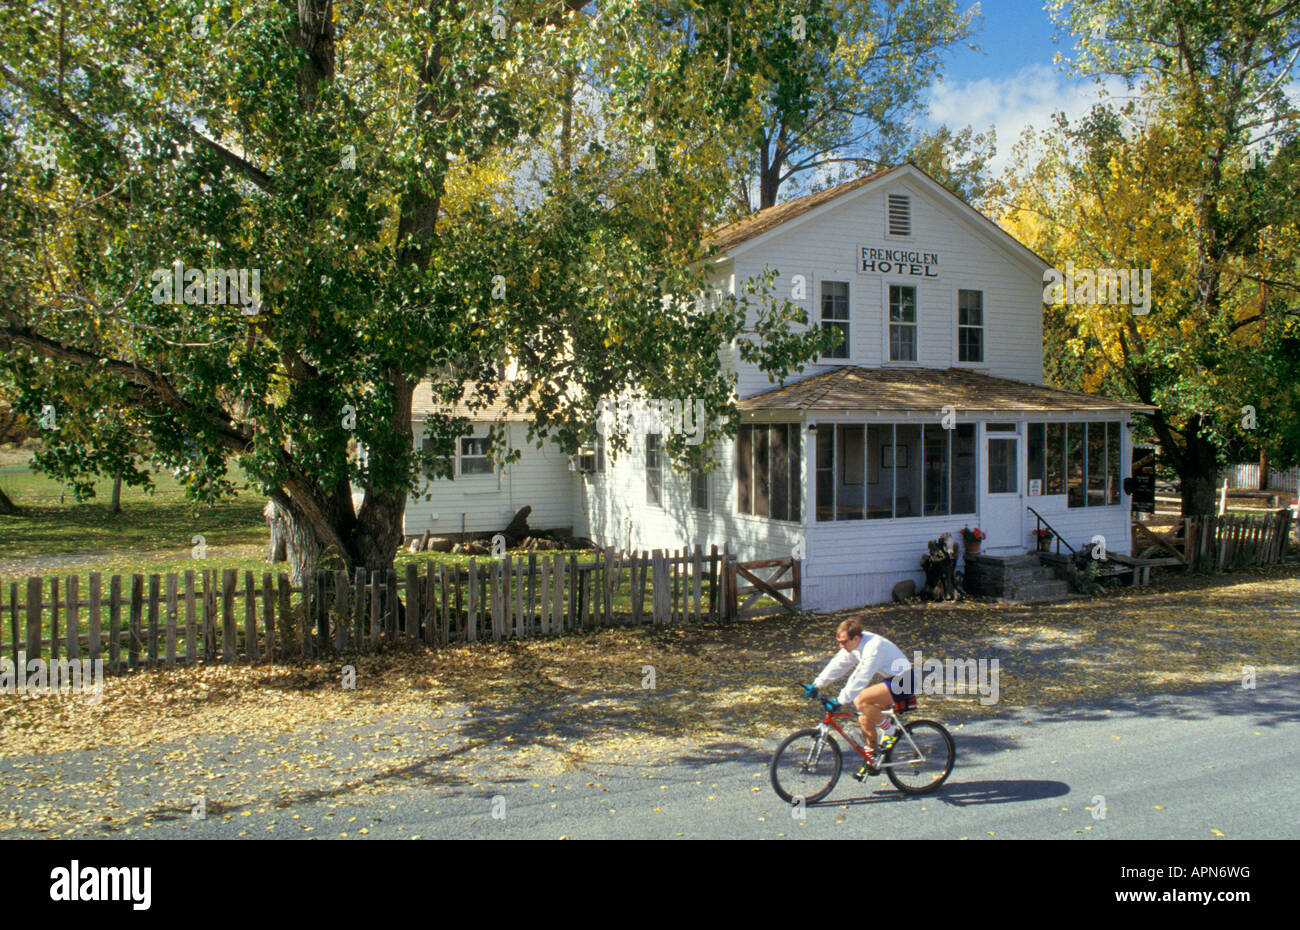 L'historique Hôtel Frenchglen dans le sud-est de l'Oregon avec man riding bicycle on road Banque D'Images